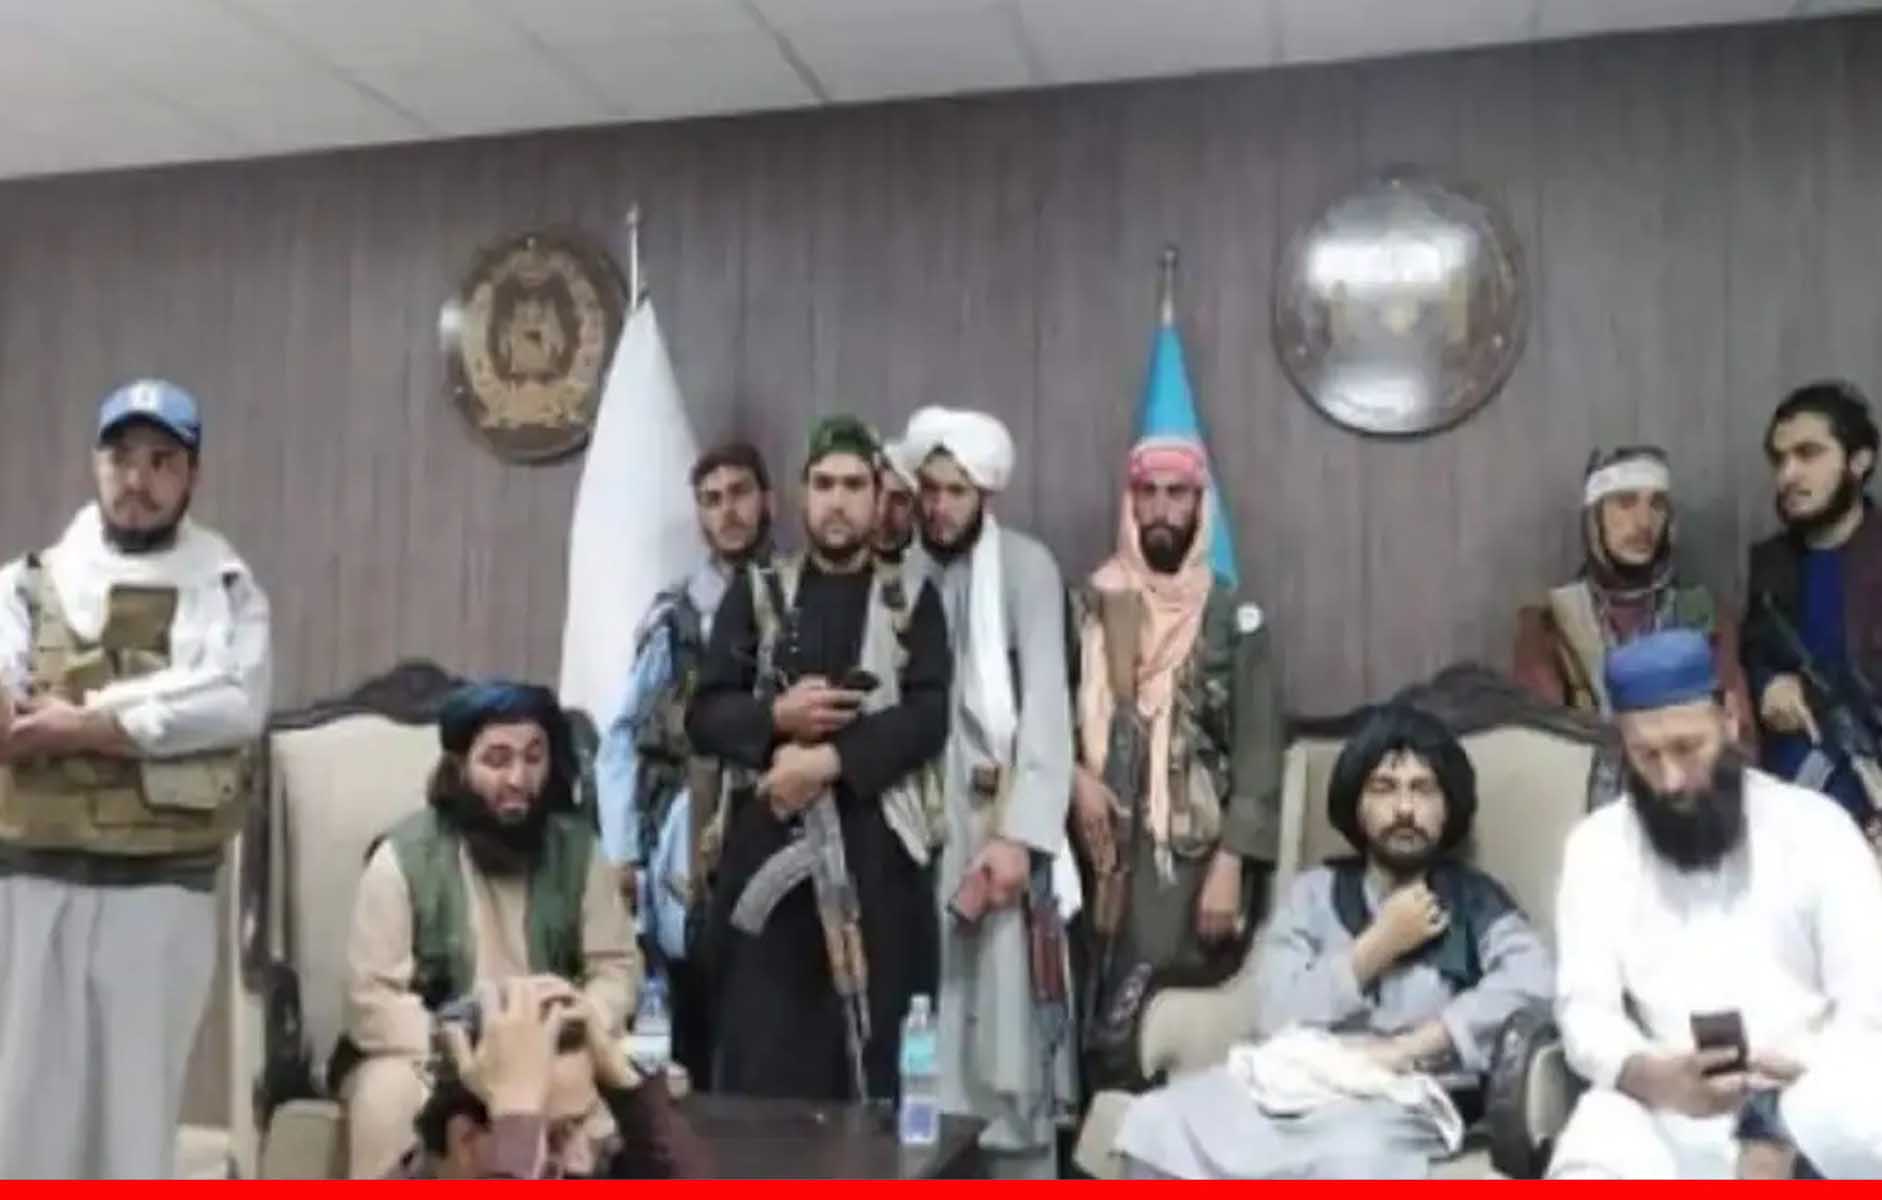 राशिद खान का साथी खिलाड़ी तालिबान को लेकर अफगानिस्तान क्रिकेट बोर्ड के दफ्तर में घुसा